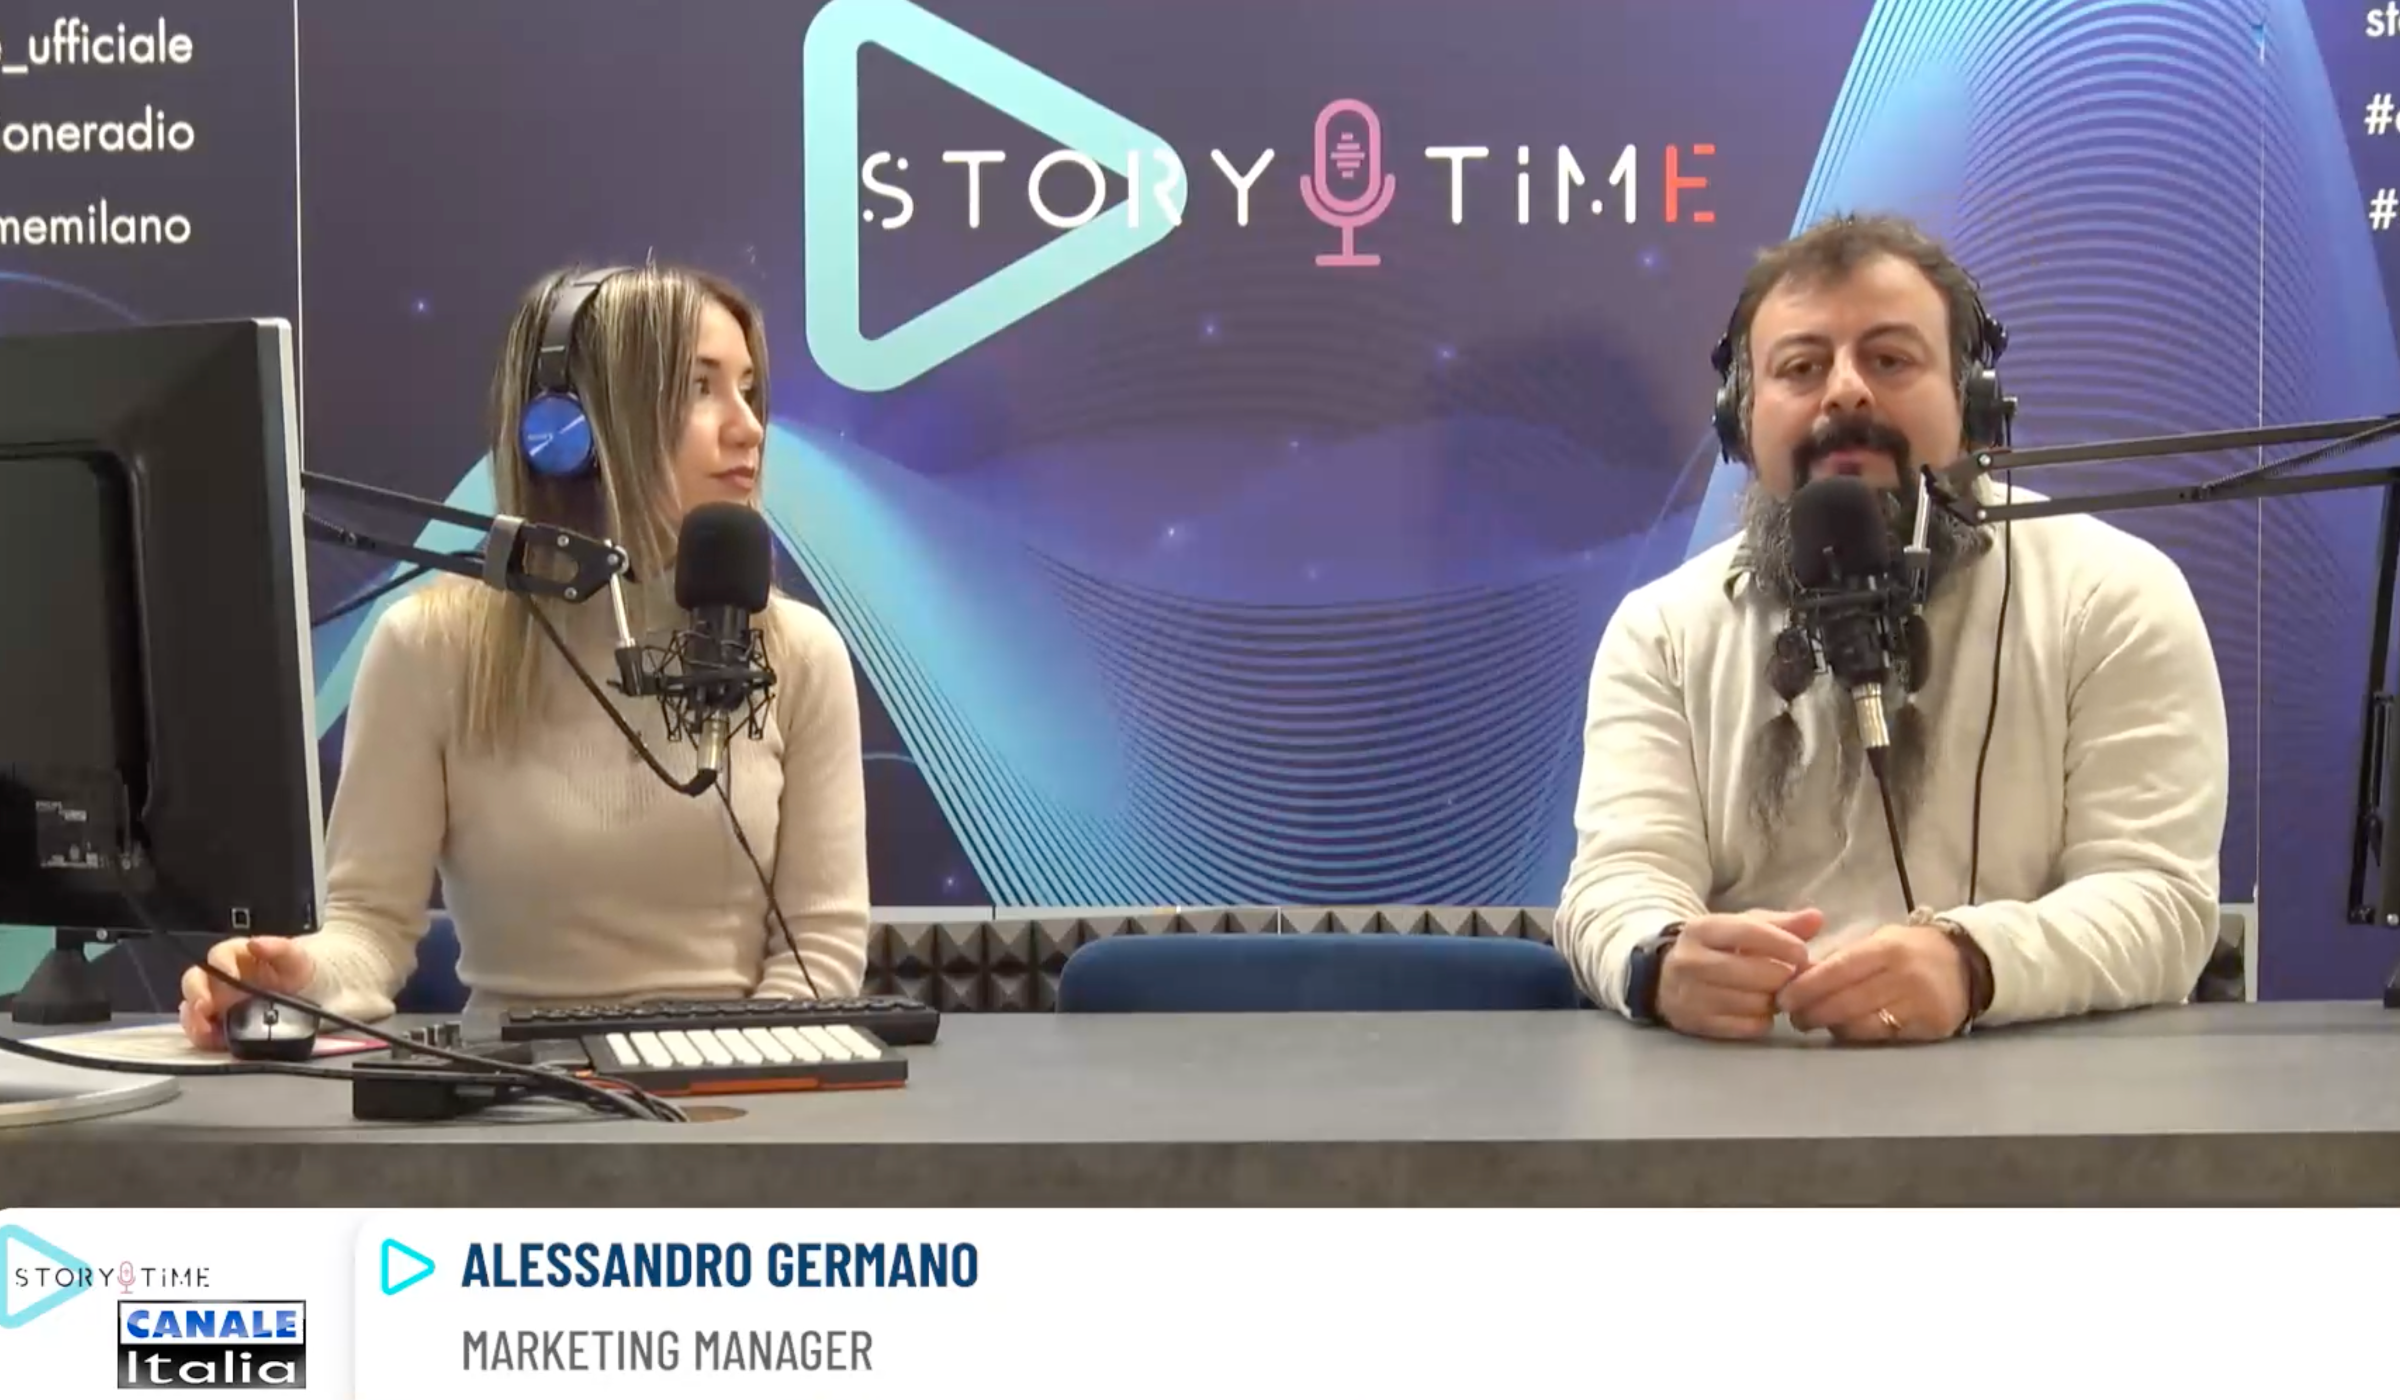 Immagine dall'intervista di Alessandro Germano ai microfoni di Radio Canale Italia